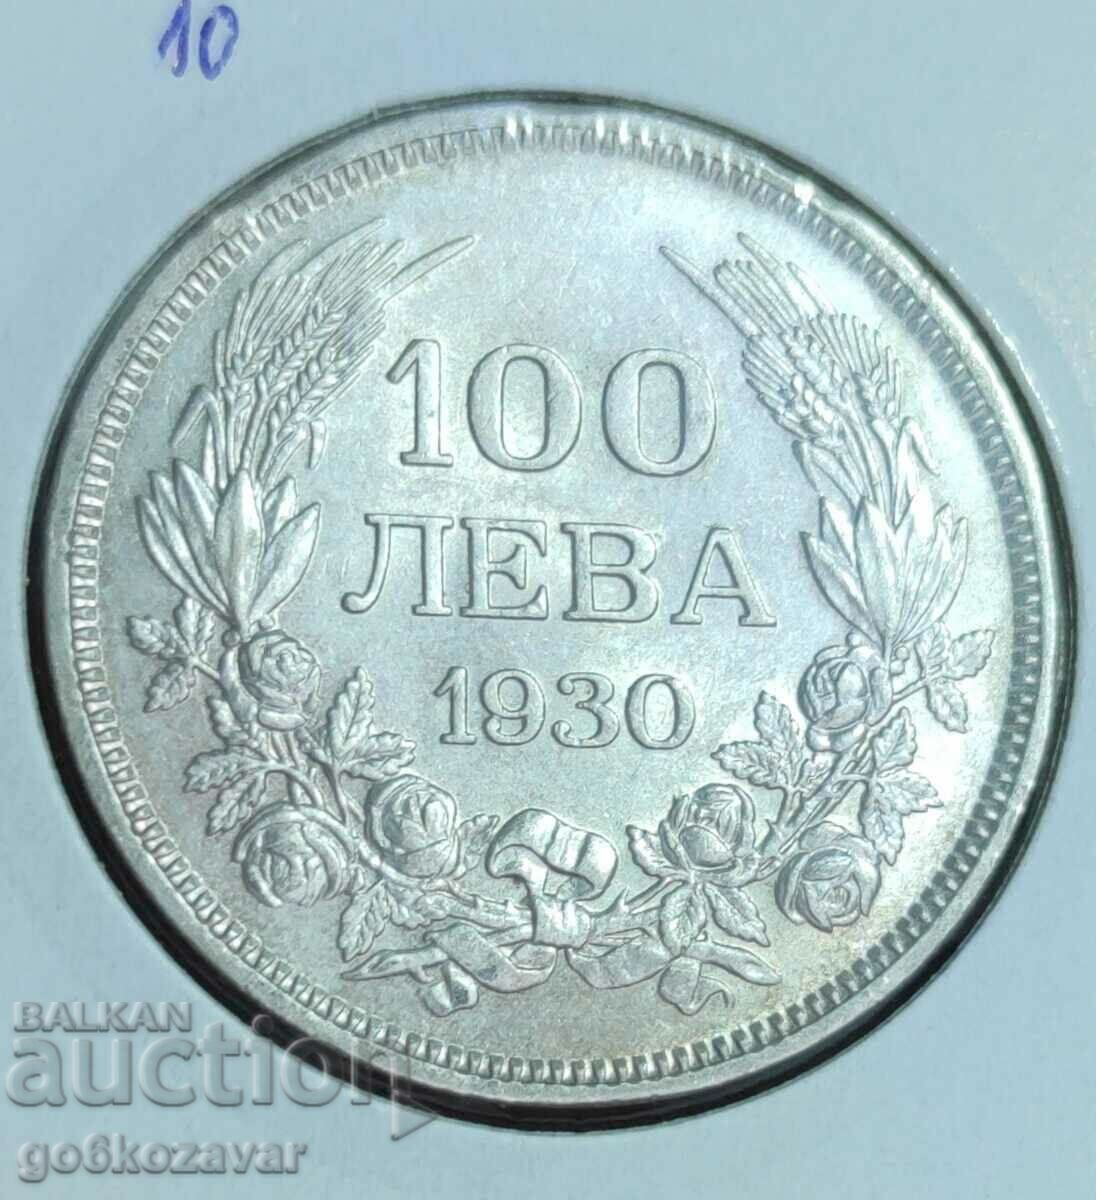 Bulgaria BGN 100 1930 Silver. Nice coin for collection!